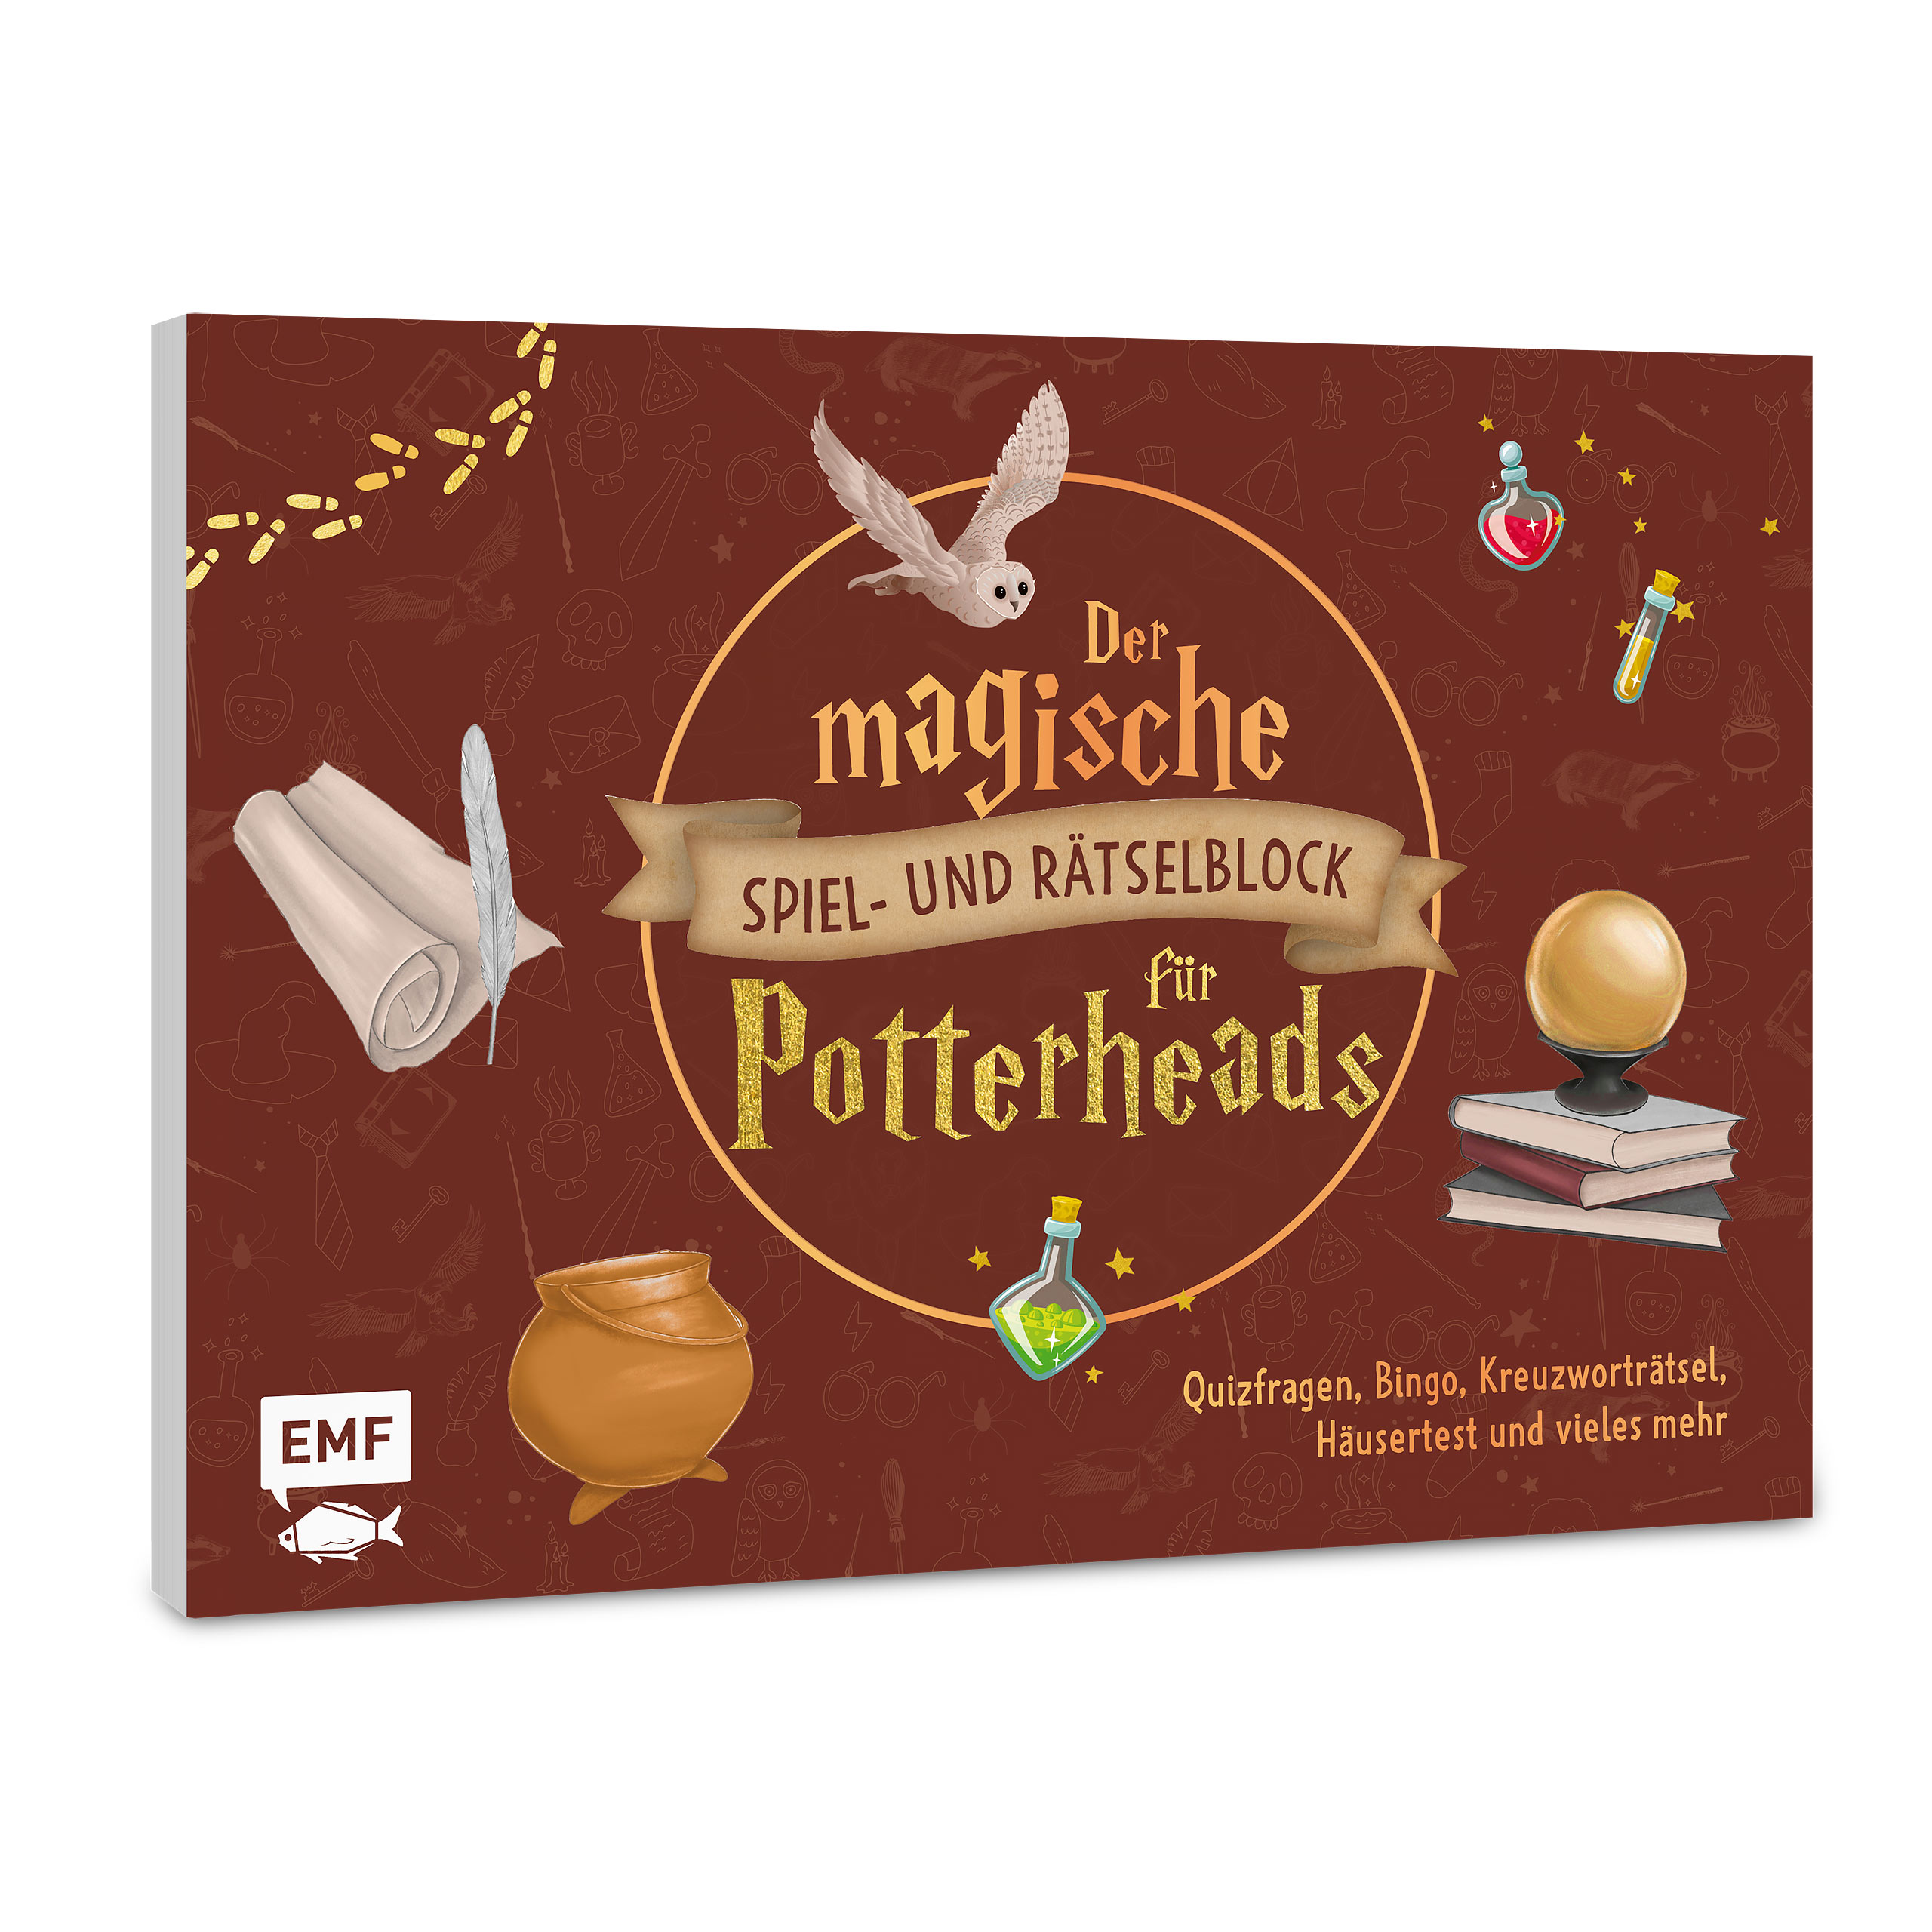 Le bloc de jeux et de puzzles magiques pour les Potterheads